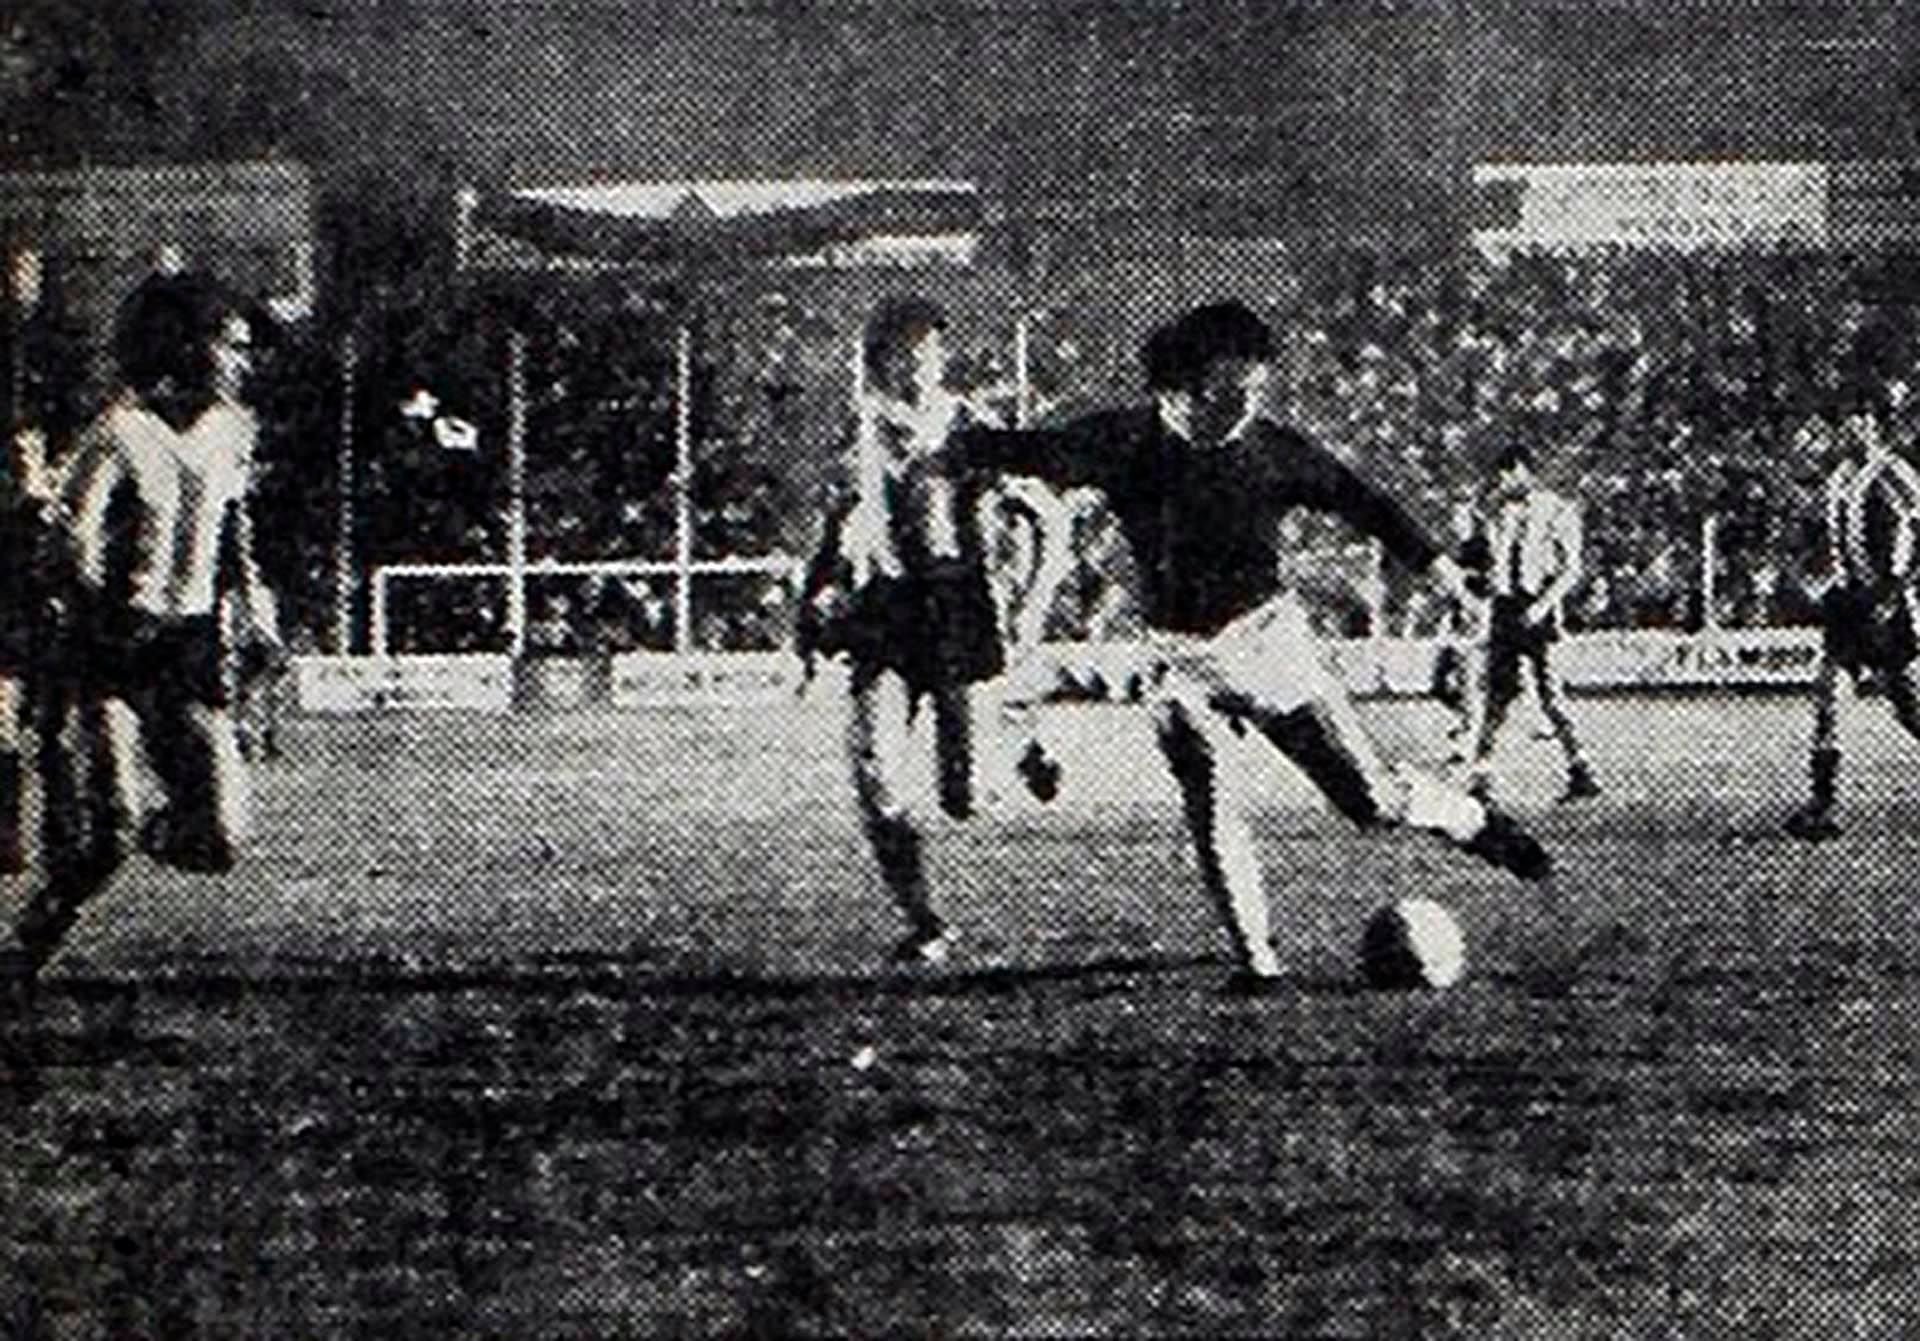 50 años, Rosario vs Selección Argentina